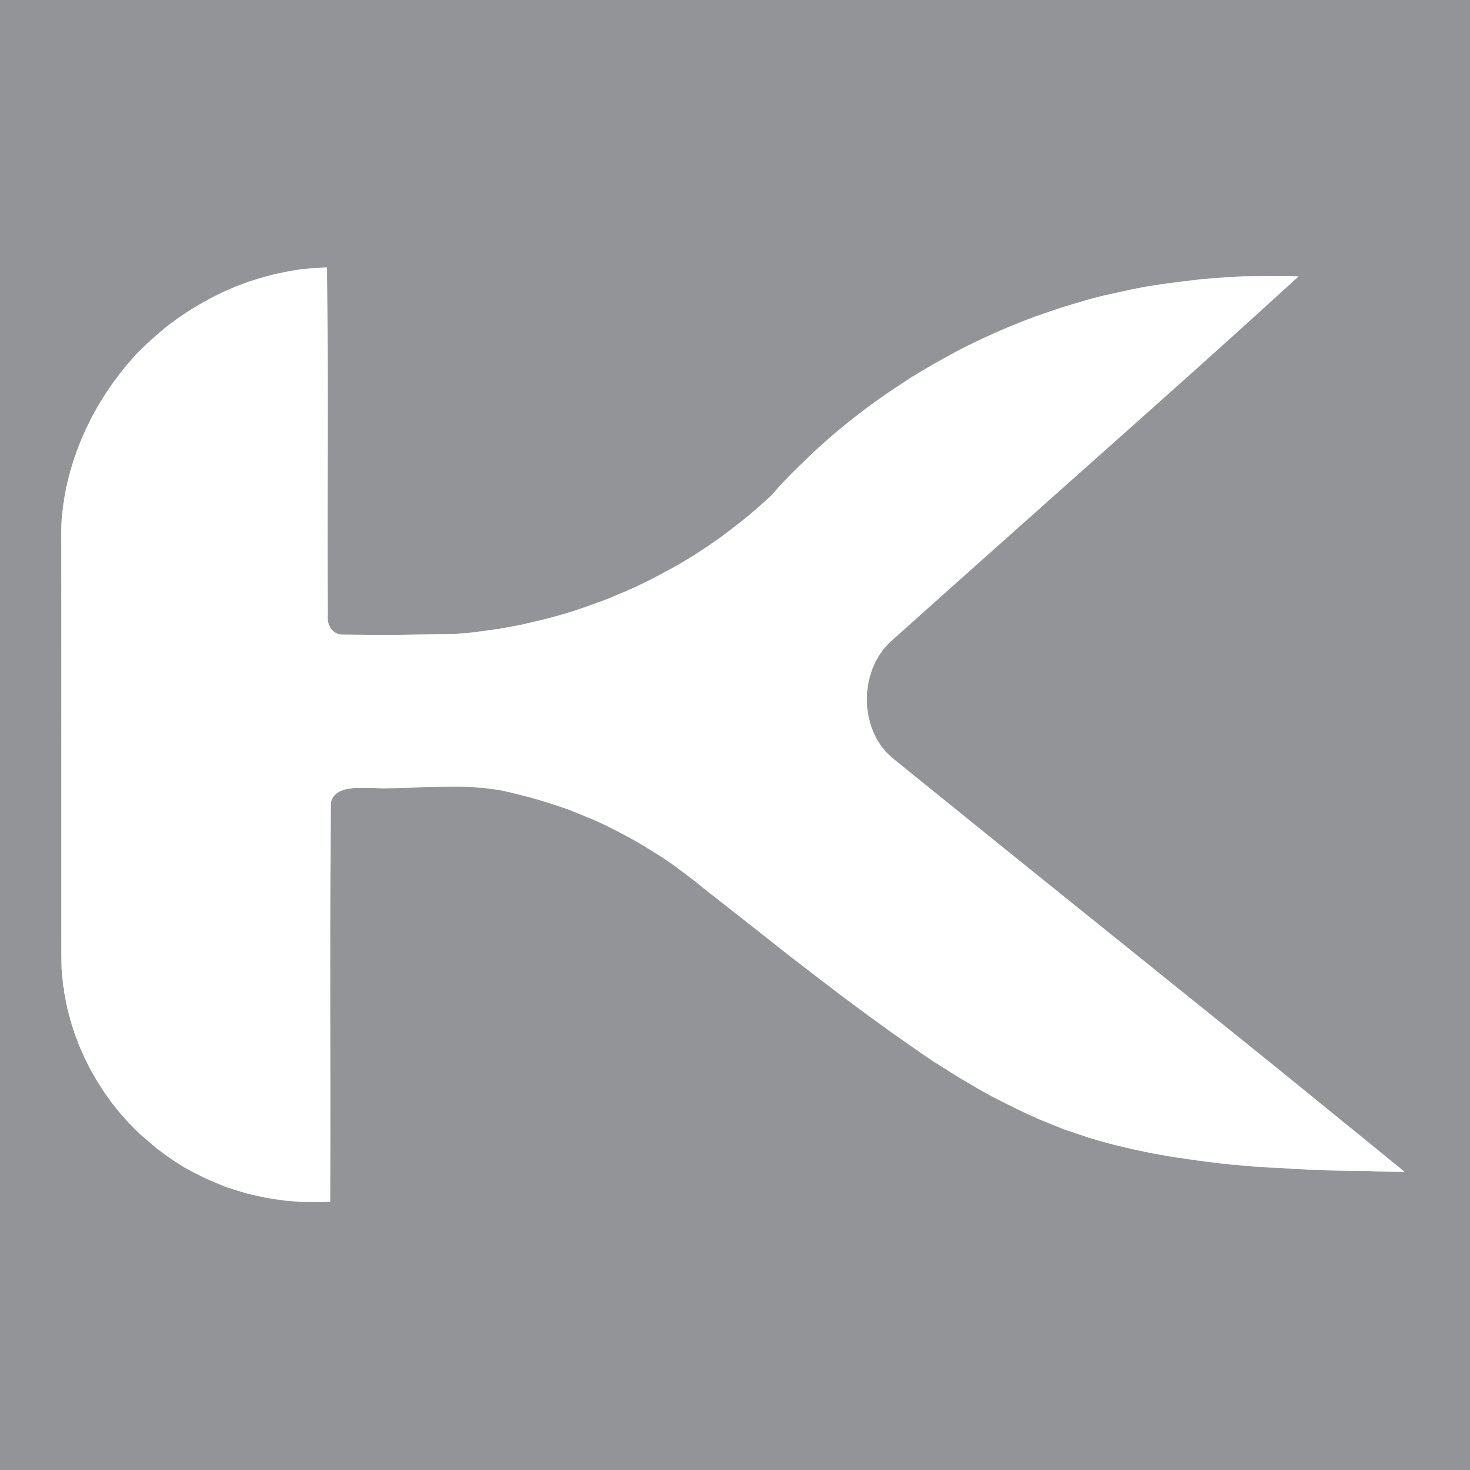 Kokuyo logo (transparent PNG)